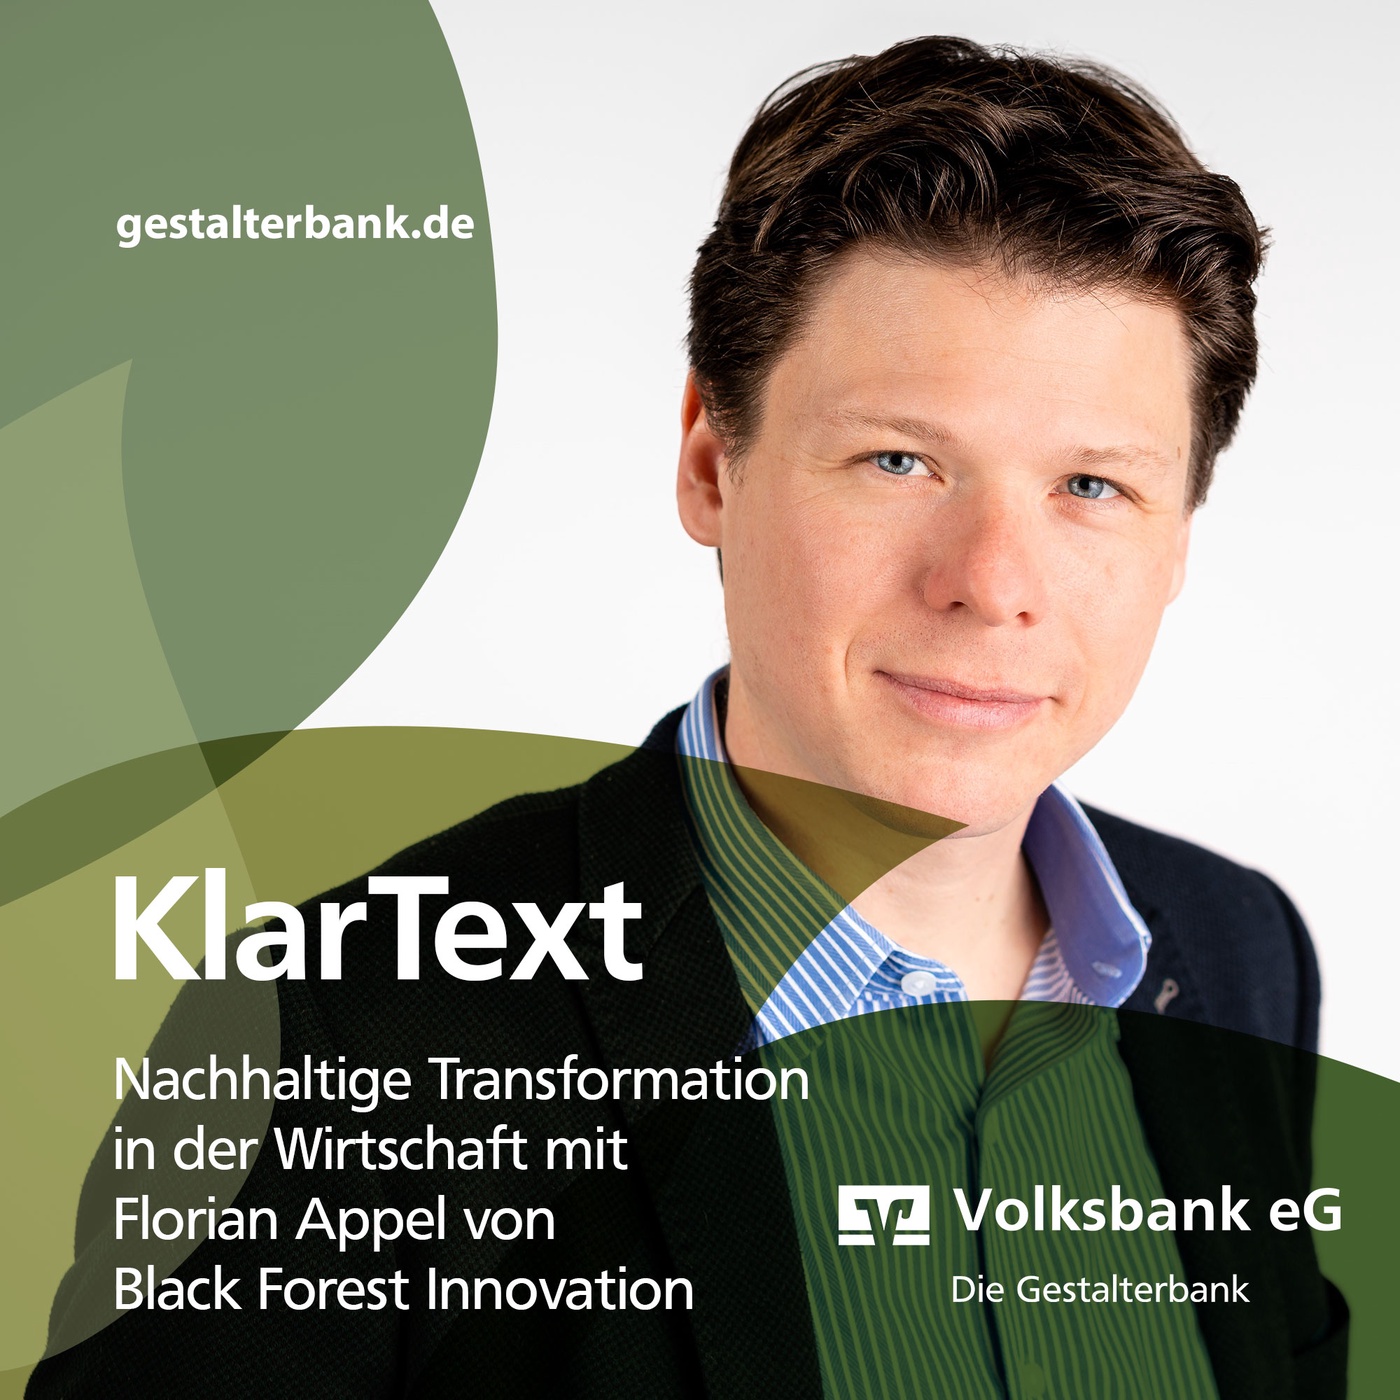 Episode 15: KlarText über die nachhaltige Transformation in der Wirtschaft mit Florian Appel von Black Forest Innovation